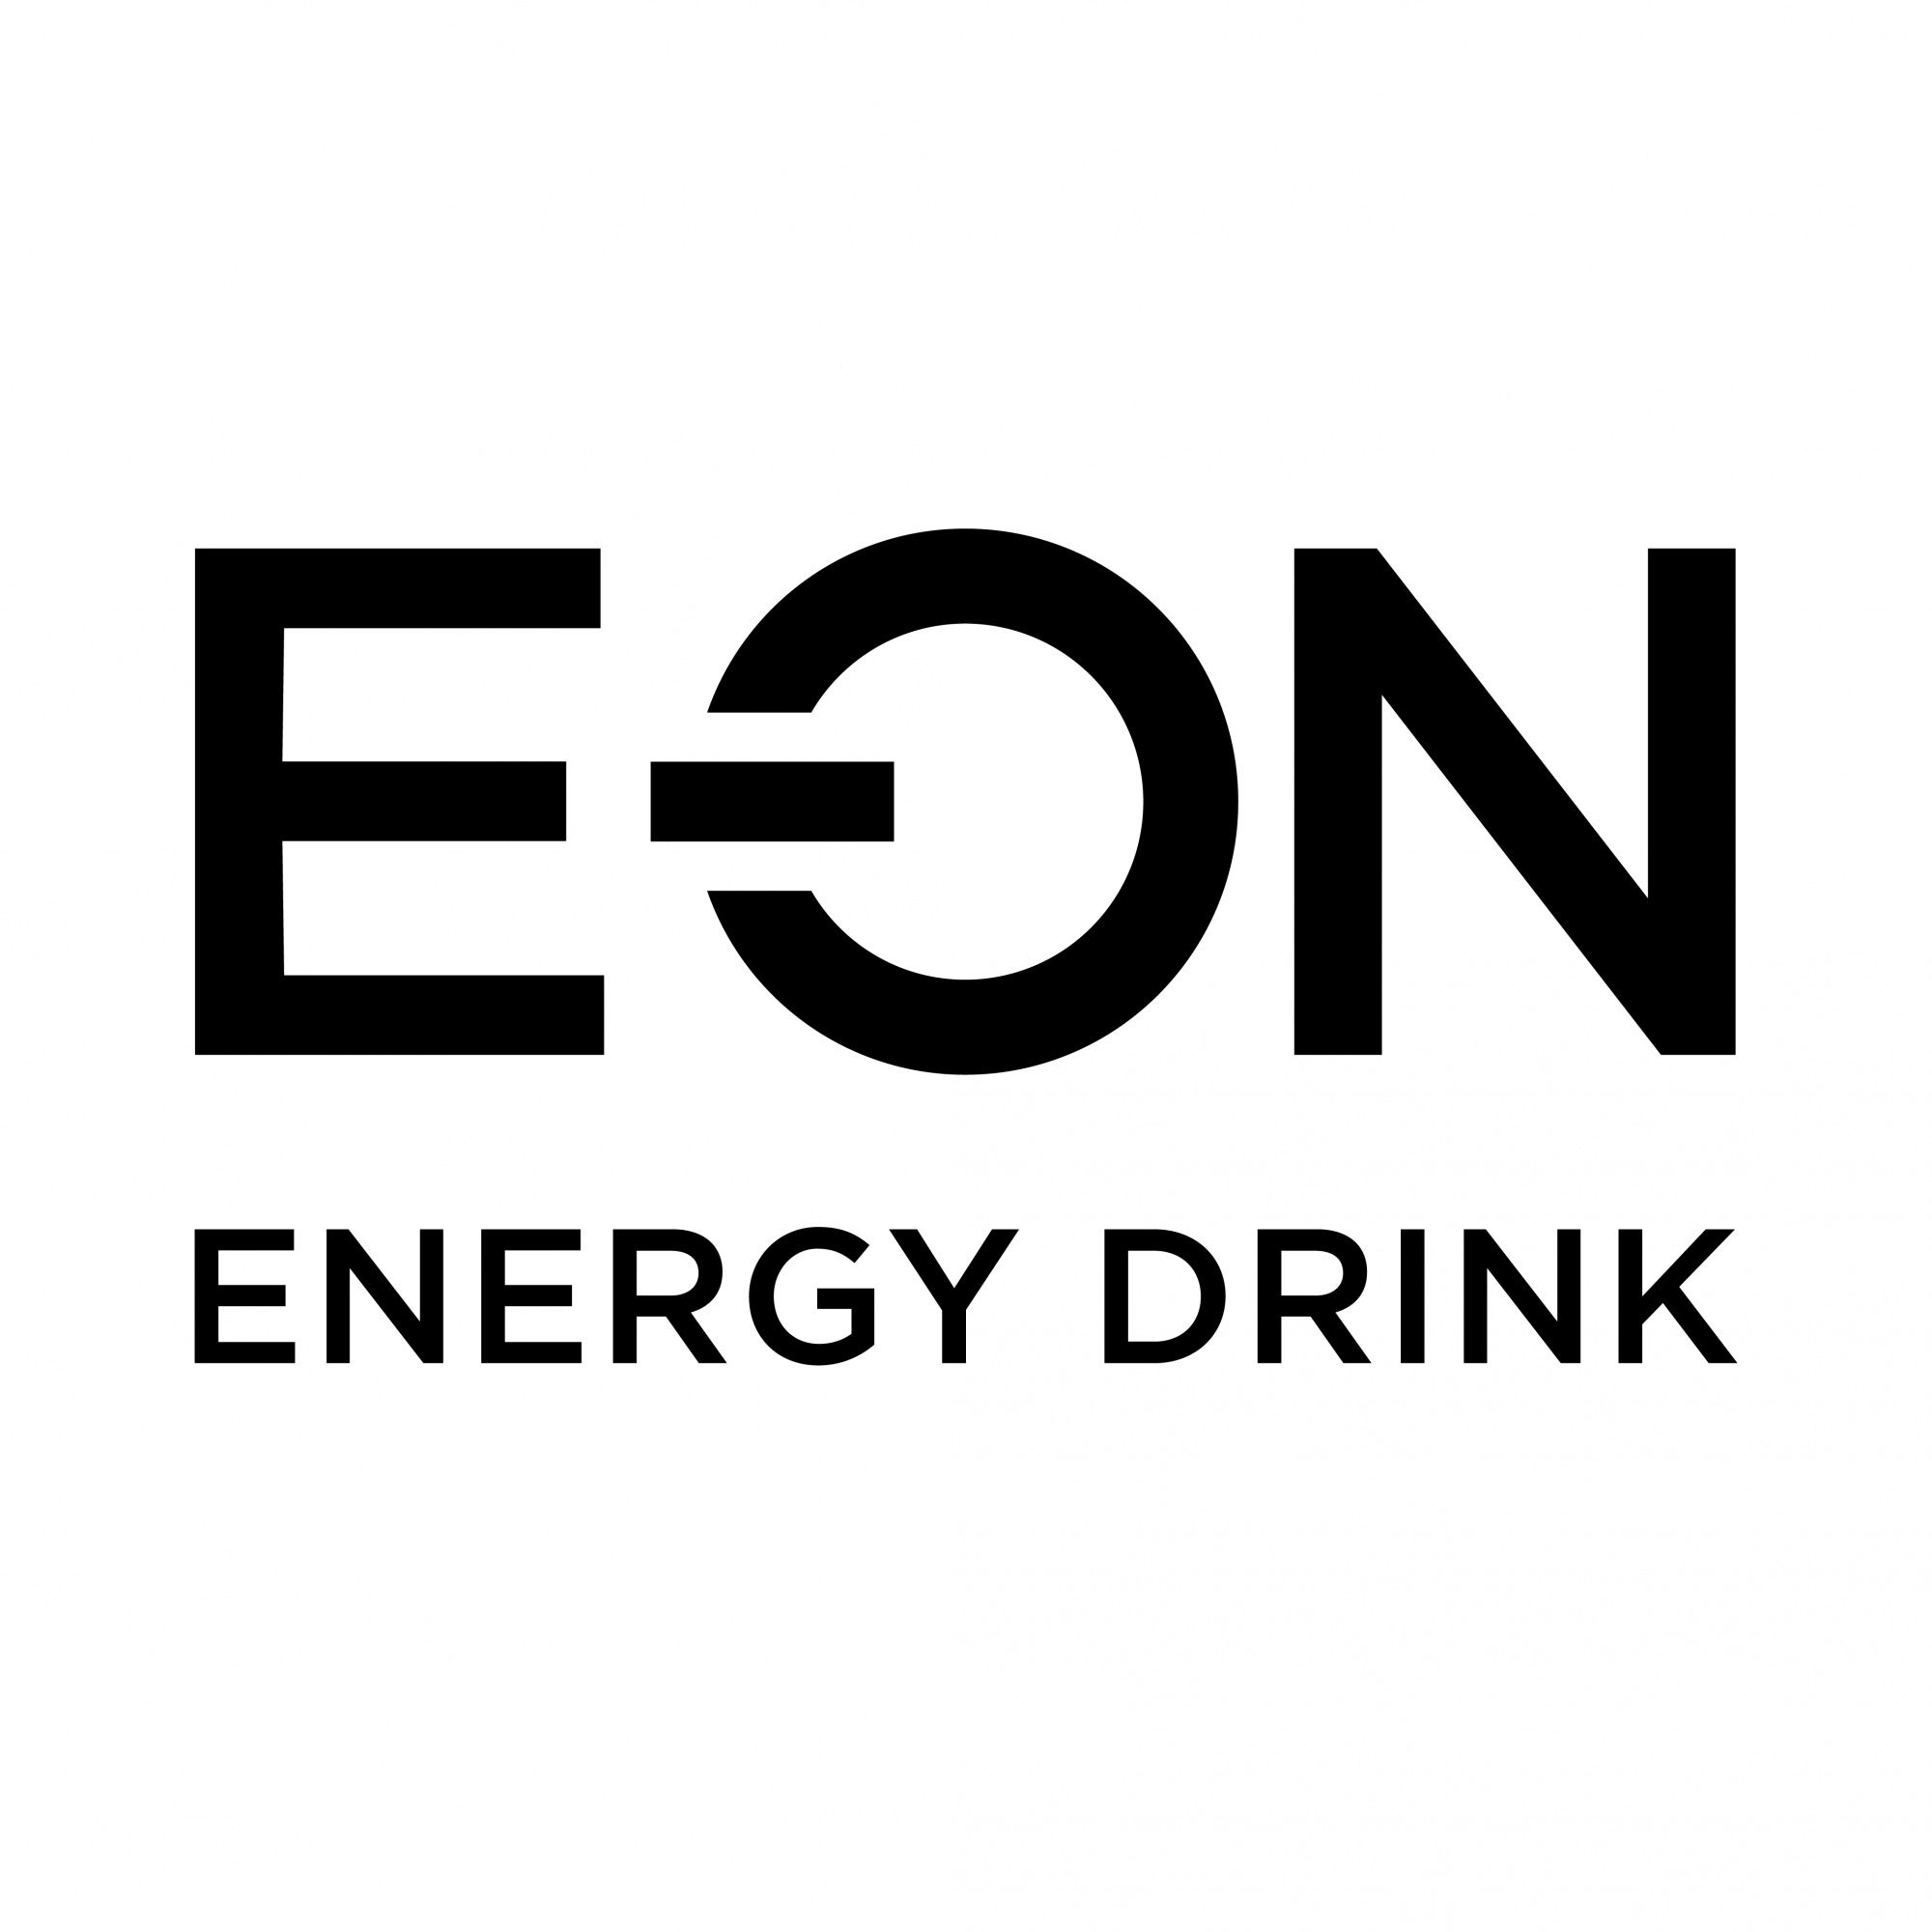 Логотип лит энерджи. Eon логотип. E-on логотип. Eon Energy Drink логотип.